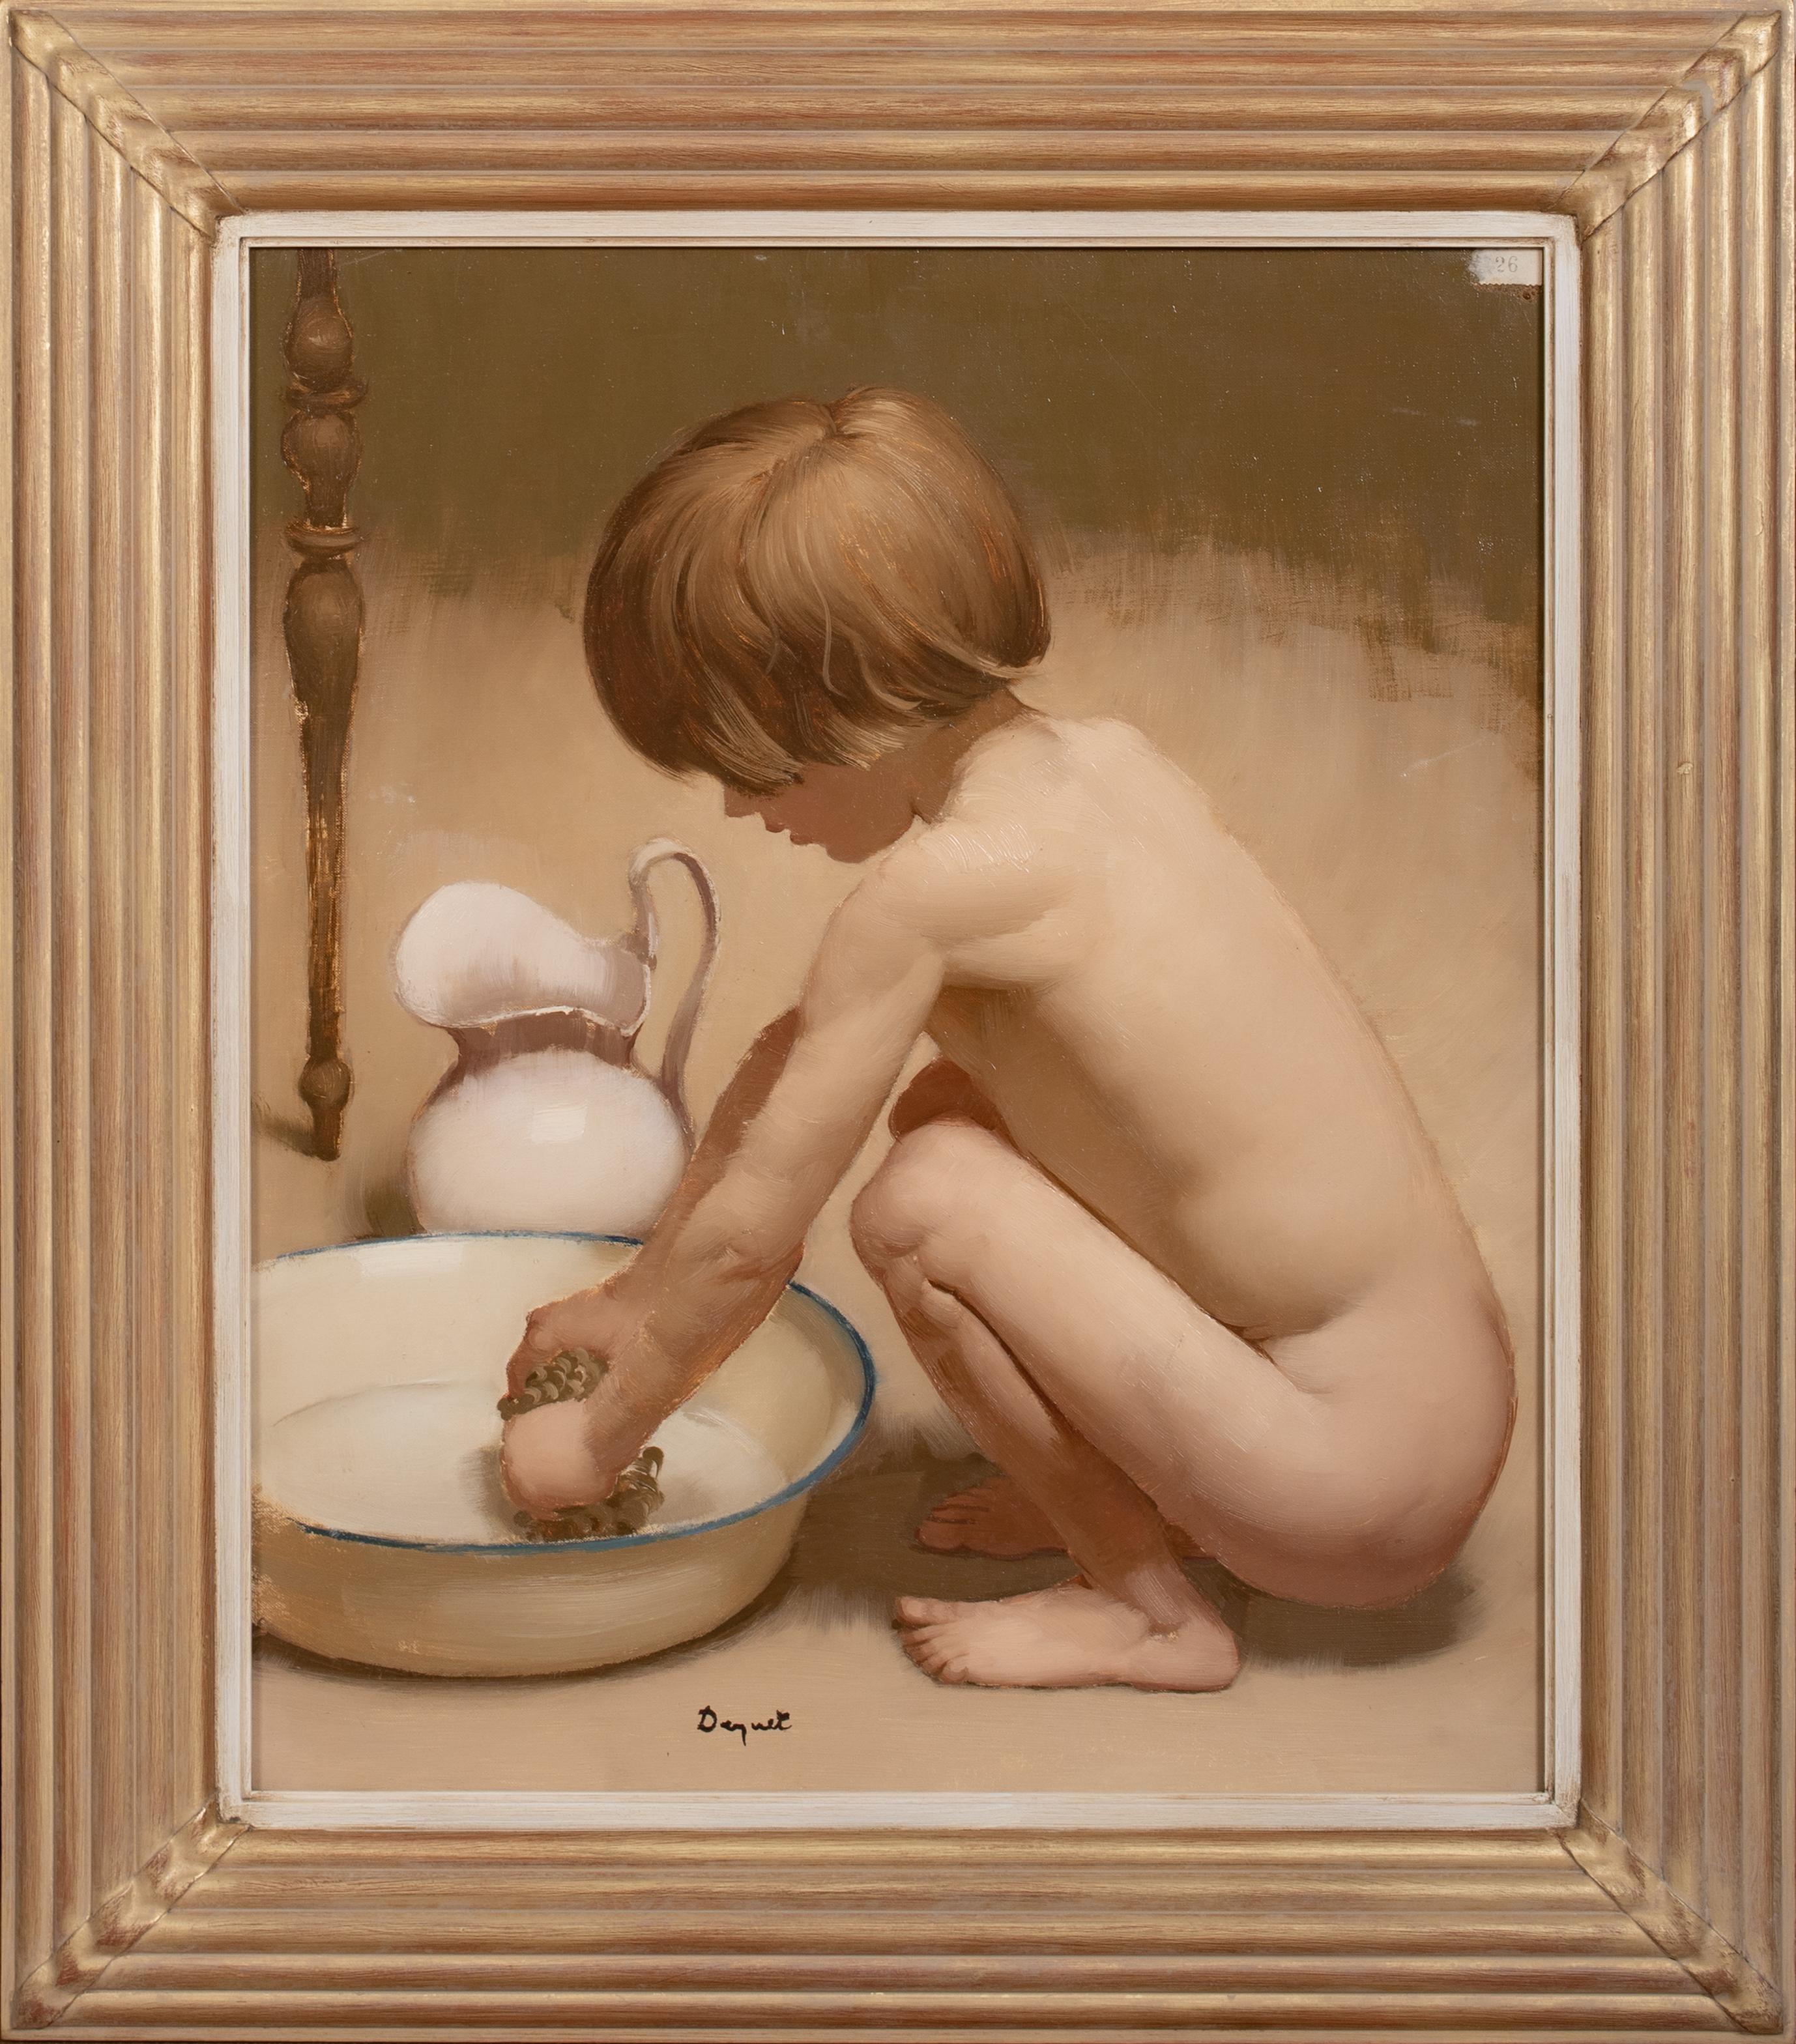 Nude Painting Unknown - Garçon nu se baignant, début du 20e siècle  École française - signé indistinctement